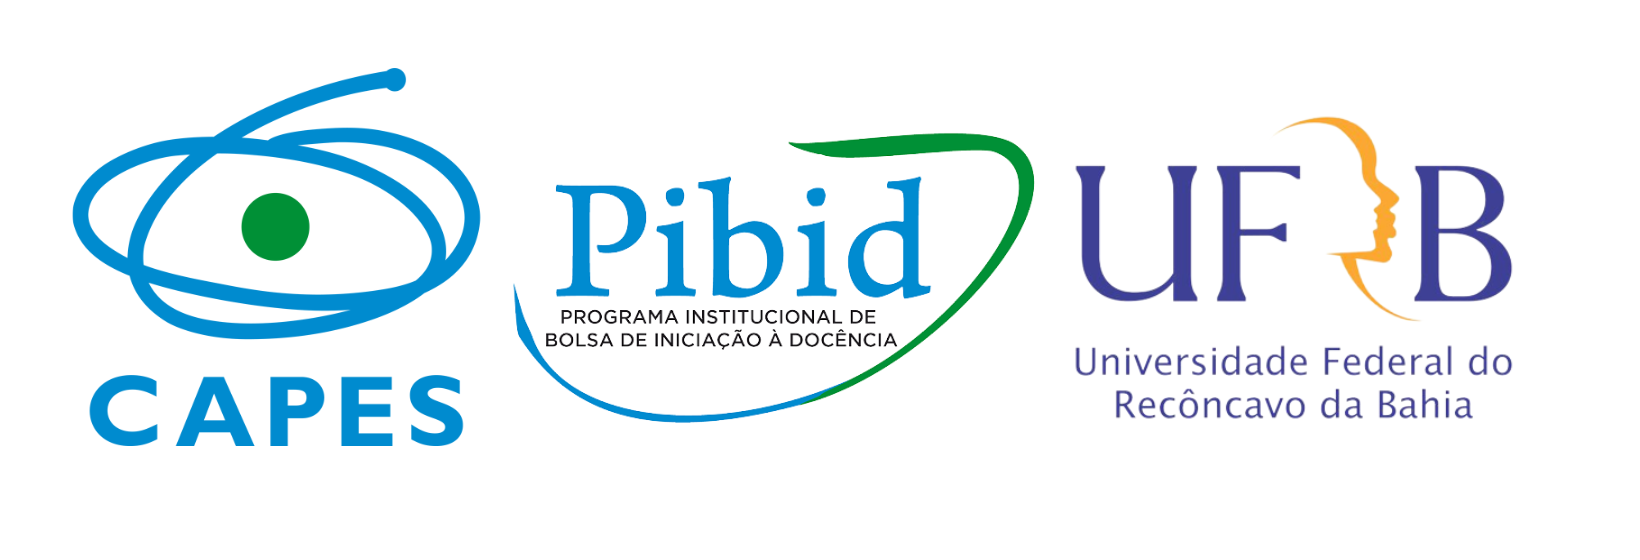 Programa Institucional de Bolsa de Iniciação à Docência da UFRB.